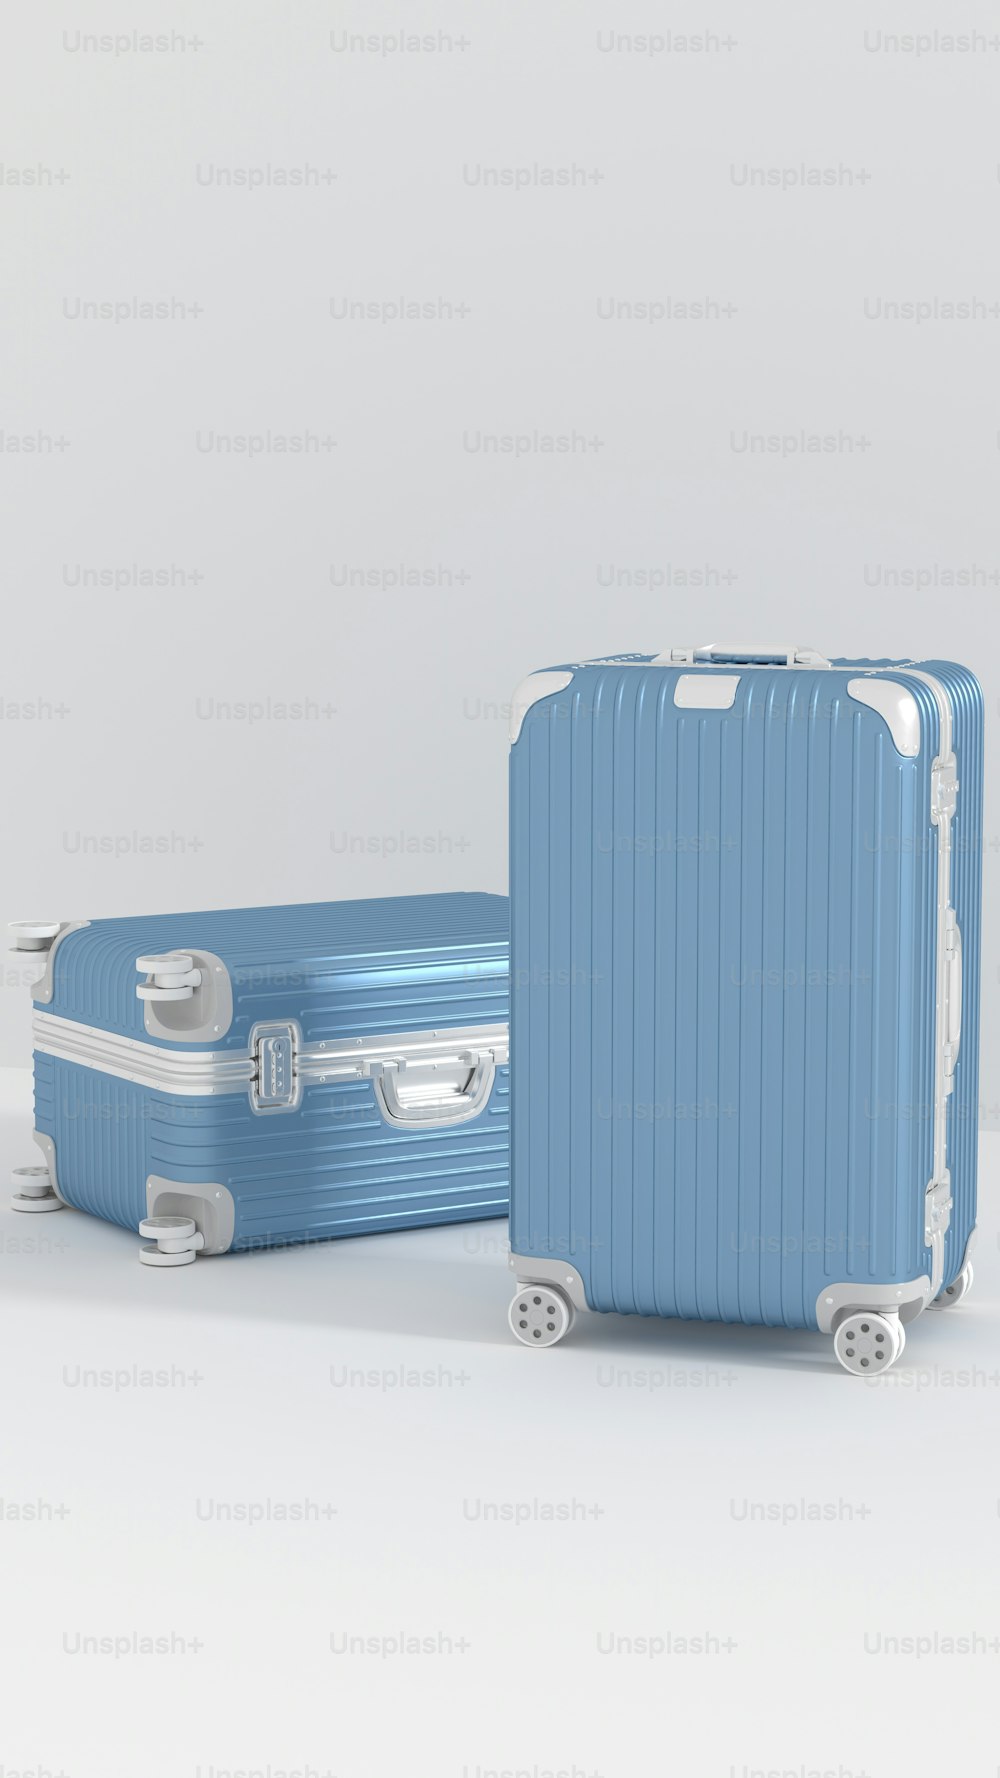 Dos piezas de equipaje azul sentadas una al lado de la otra